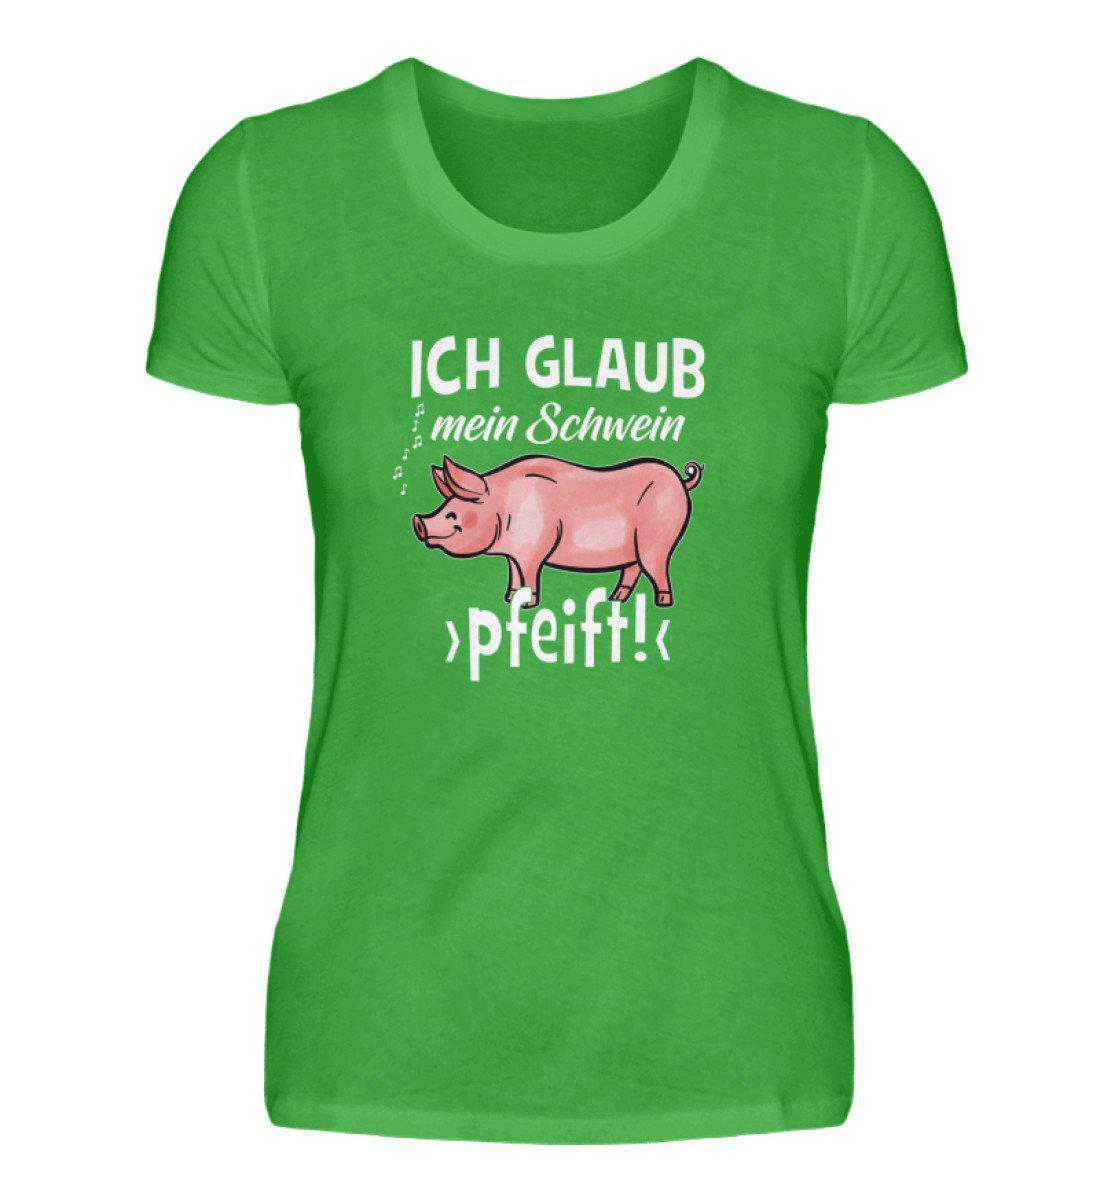 Ich glaub mein Schwein pfeift · Damen T-Shirt-Damen Basic T-Shirt-Green Apple-S-Agrarstarz